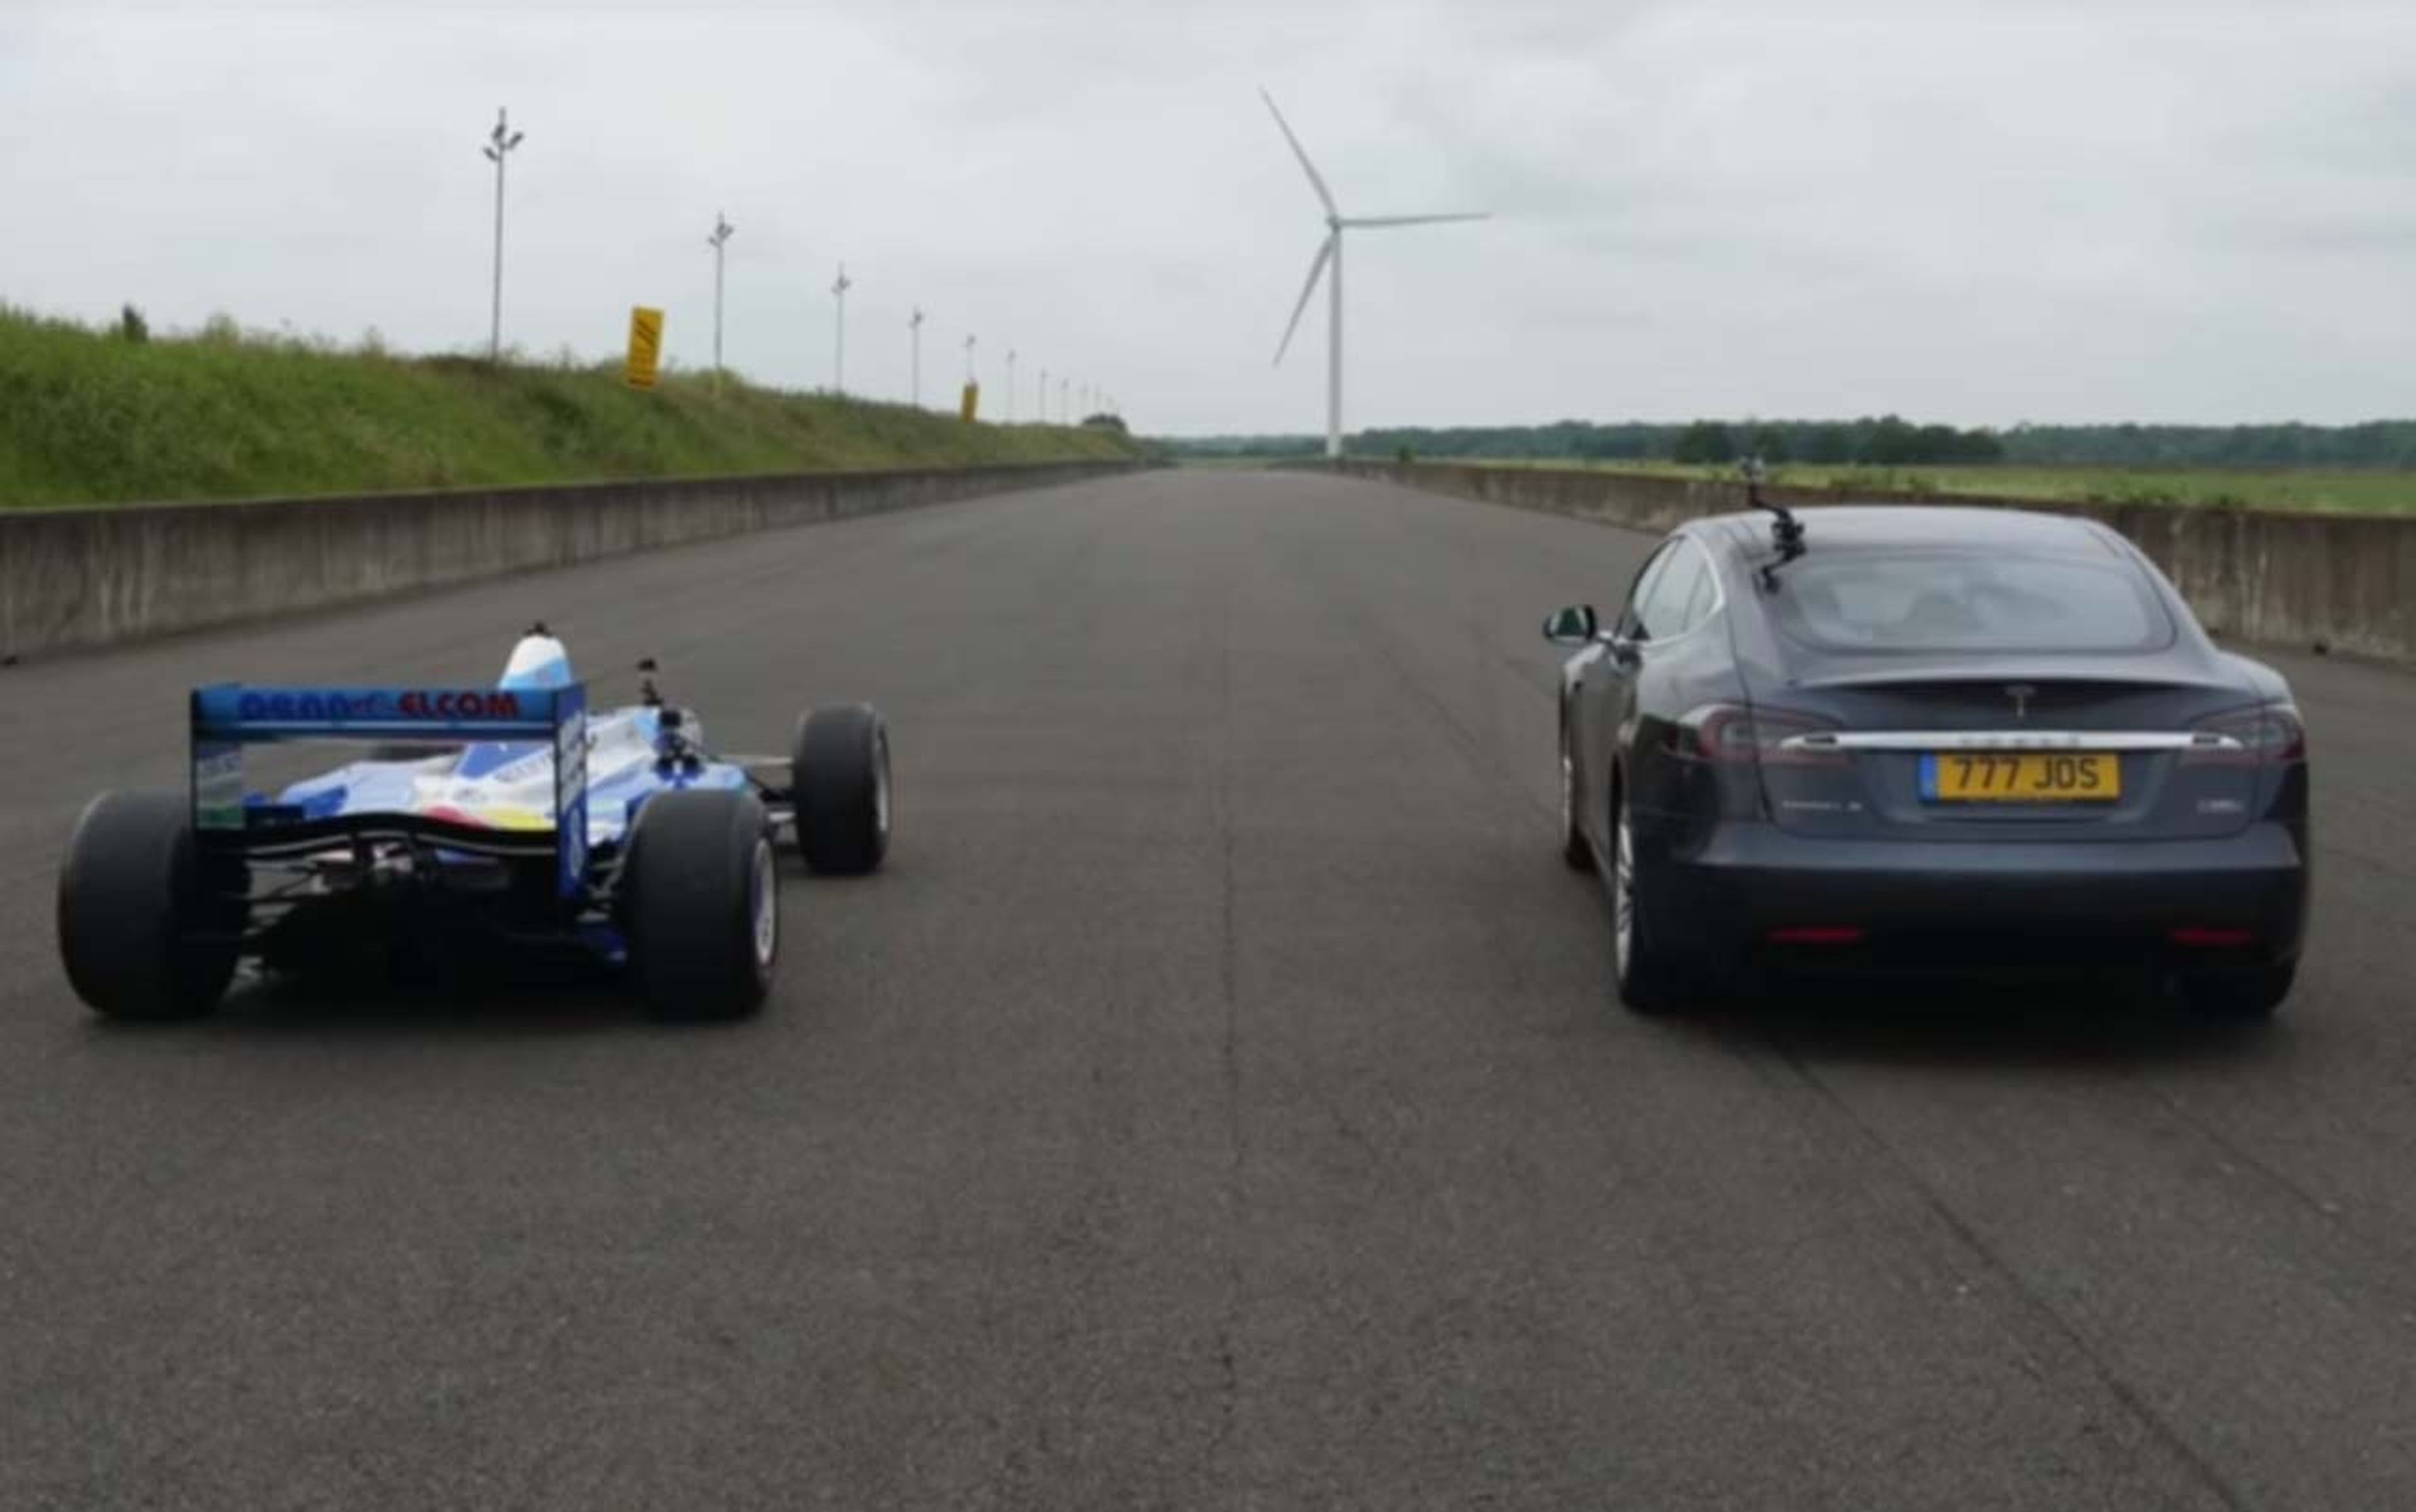 Vídeo: ¿puede un Tesla ganar a un fórmula 1 en aceleración?